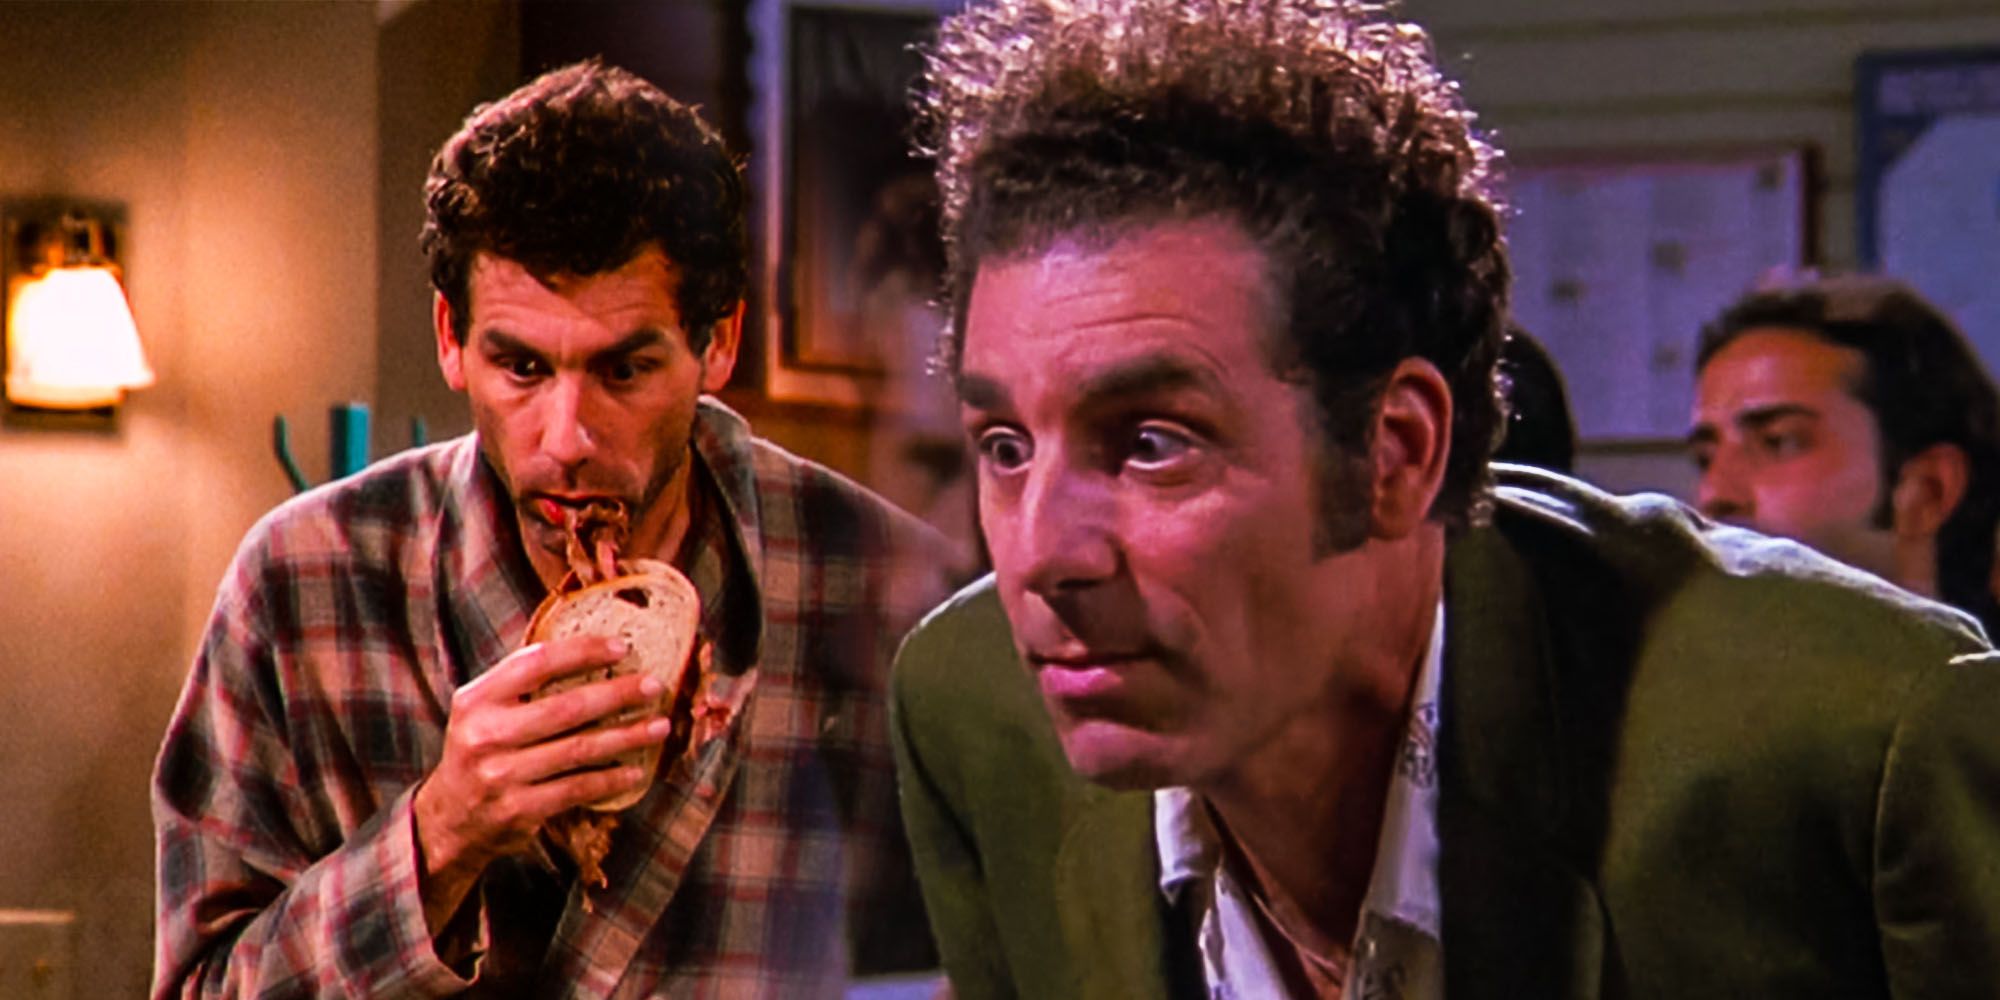 La teoría de Dark Seinfeld afirma que Kramer siempre estuvo casado en secreto